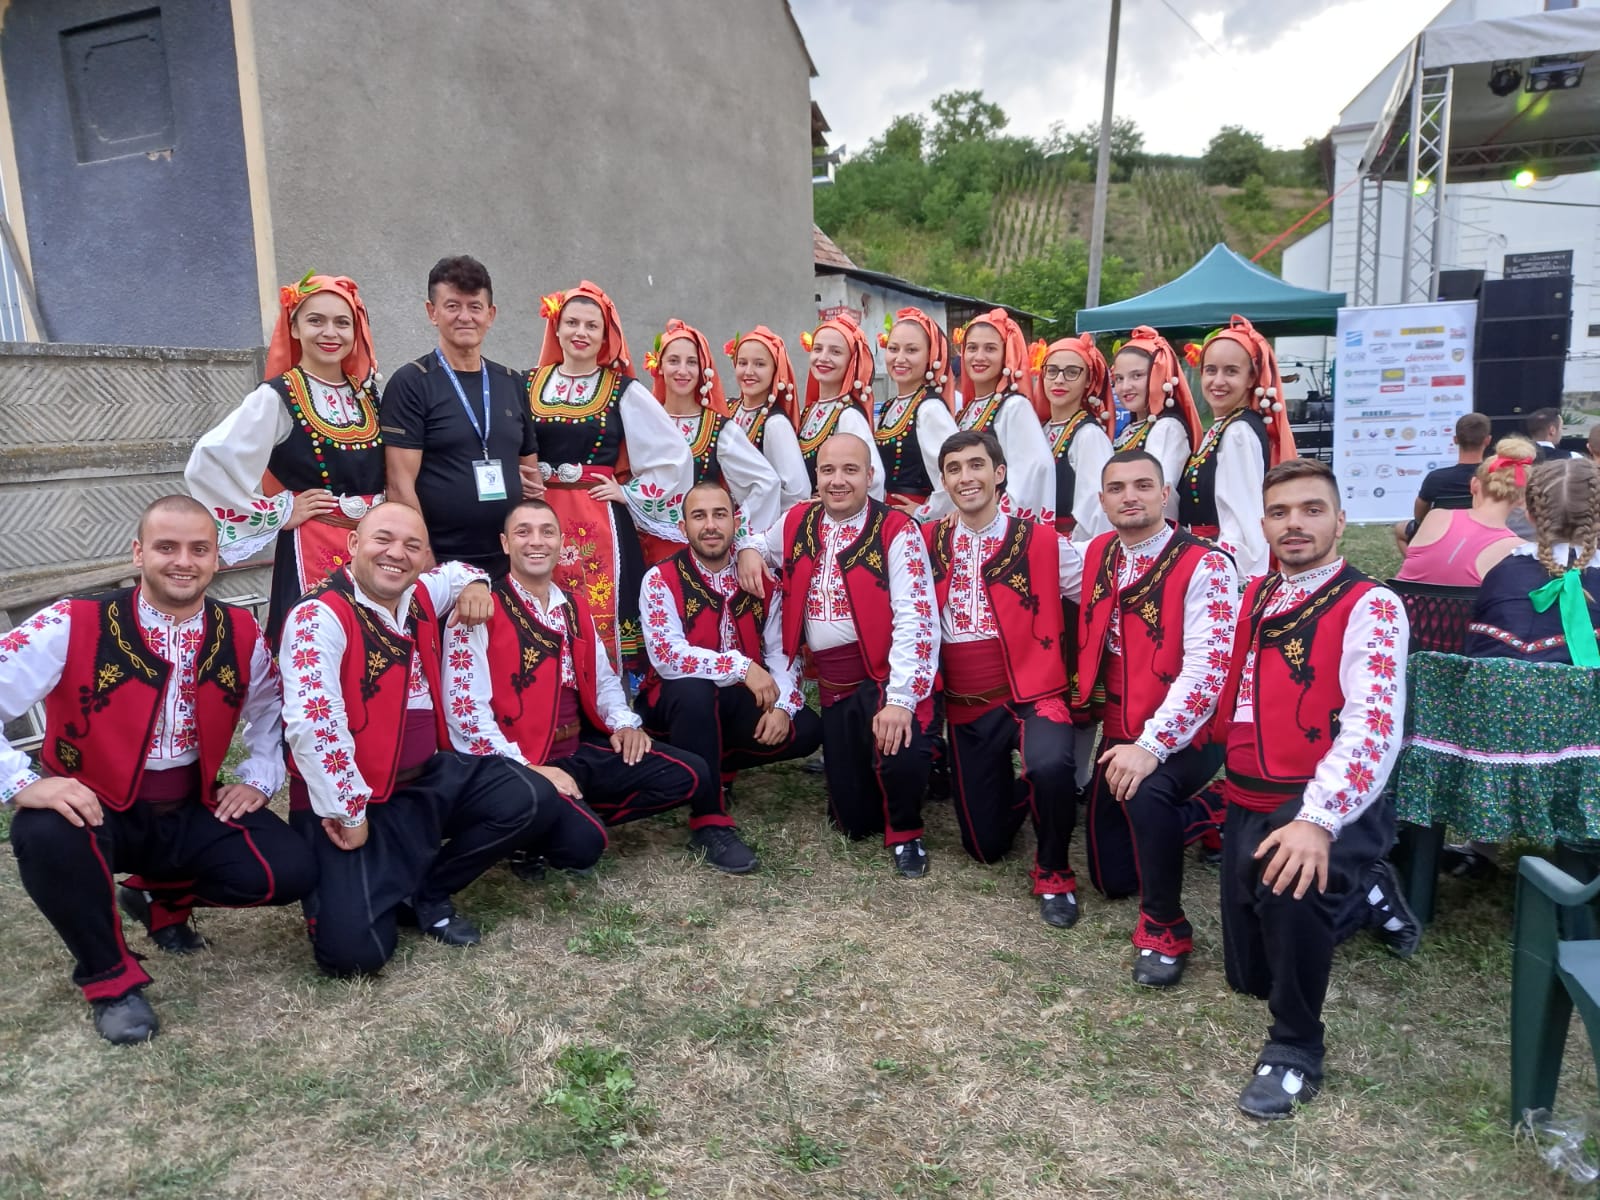 Boris Ganchev, a bolgár Chavdar Folk-dance Group vezetője szerint Miriszló nagyon szép falu, nagyon jól érzik itt magukat, mindenki mosolyog, az emberek nagyon vendégszeretők, az ételek és az italok is nagyon finomak.